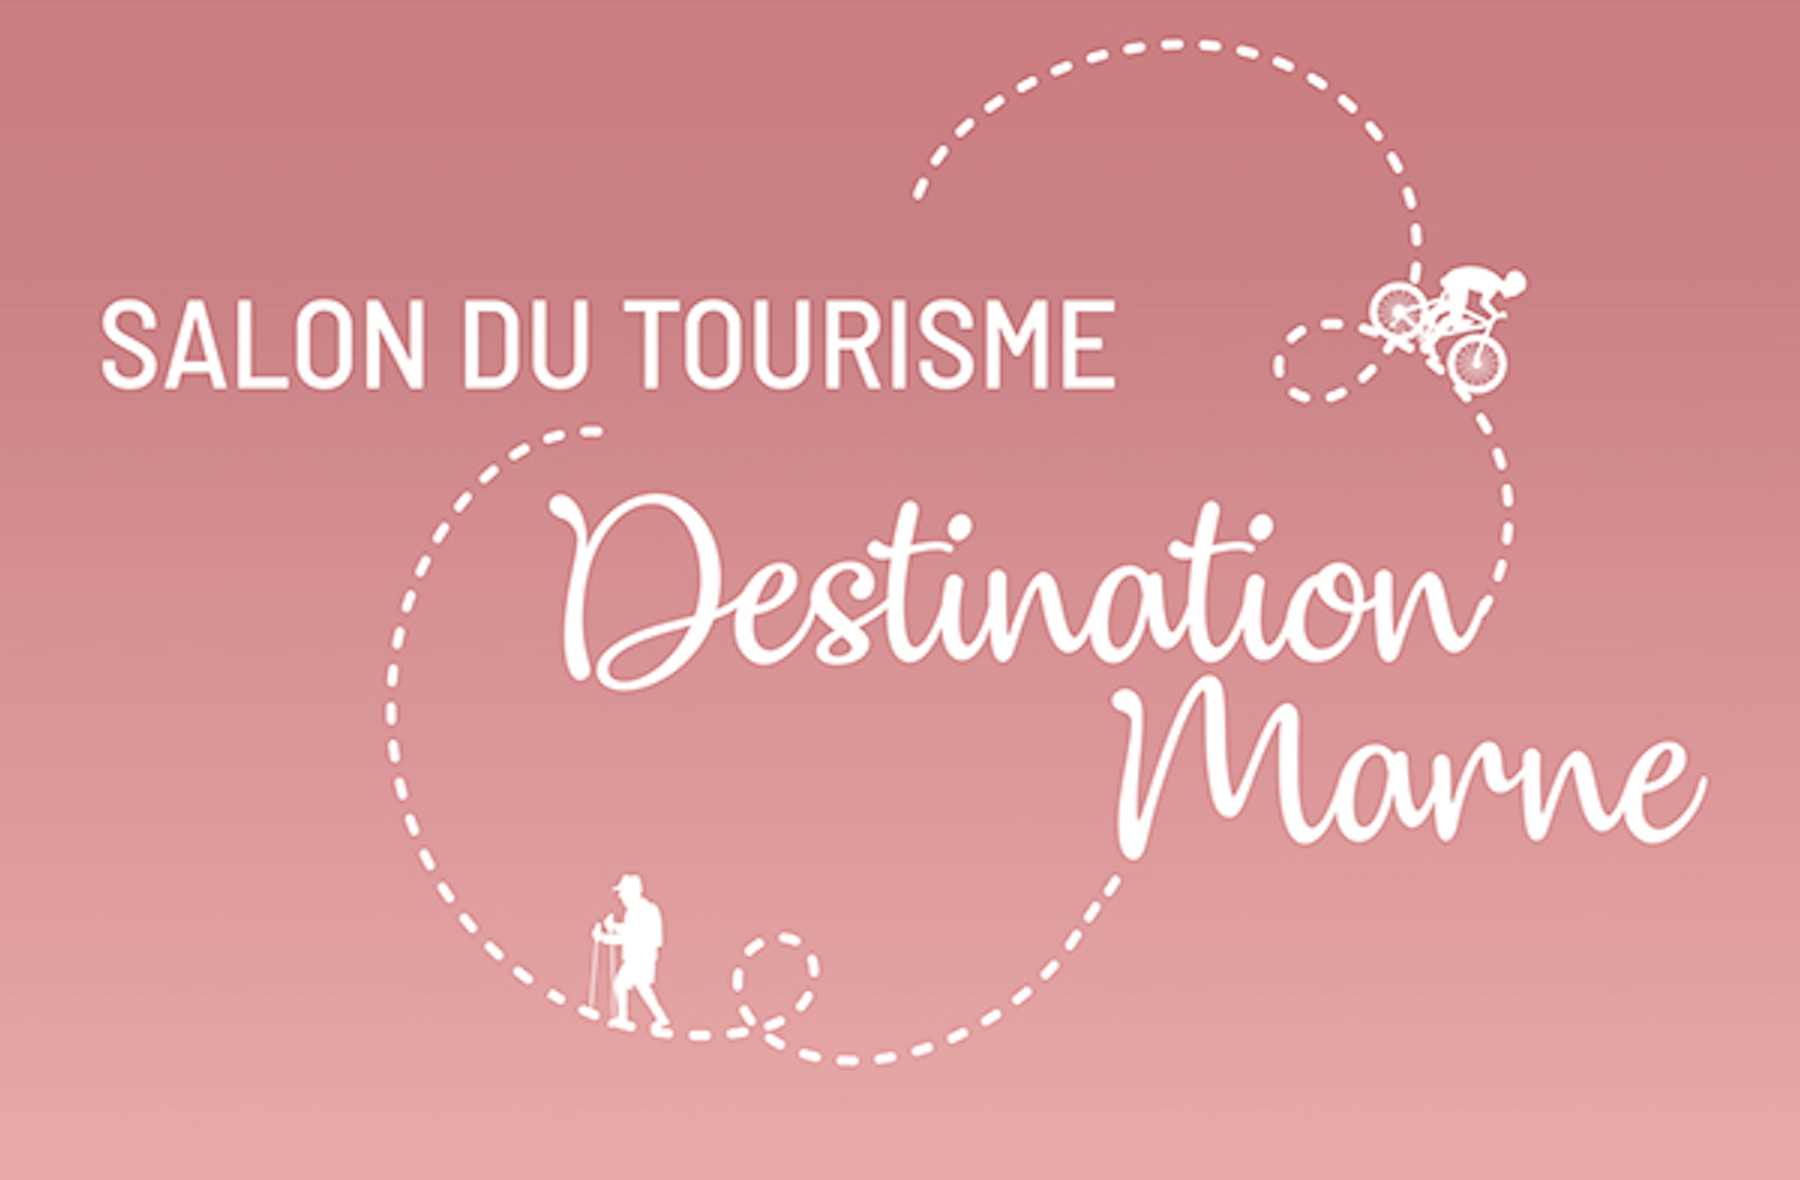 Châlons-en-Champagne : Destination Marne du 11 au 14 mars, le salon pour (re)découvrir notre territoire